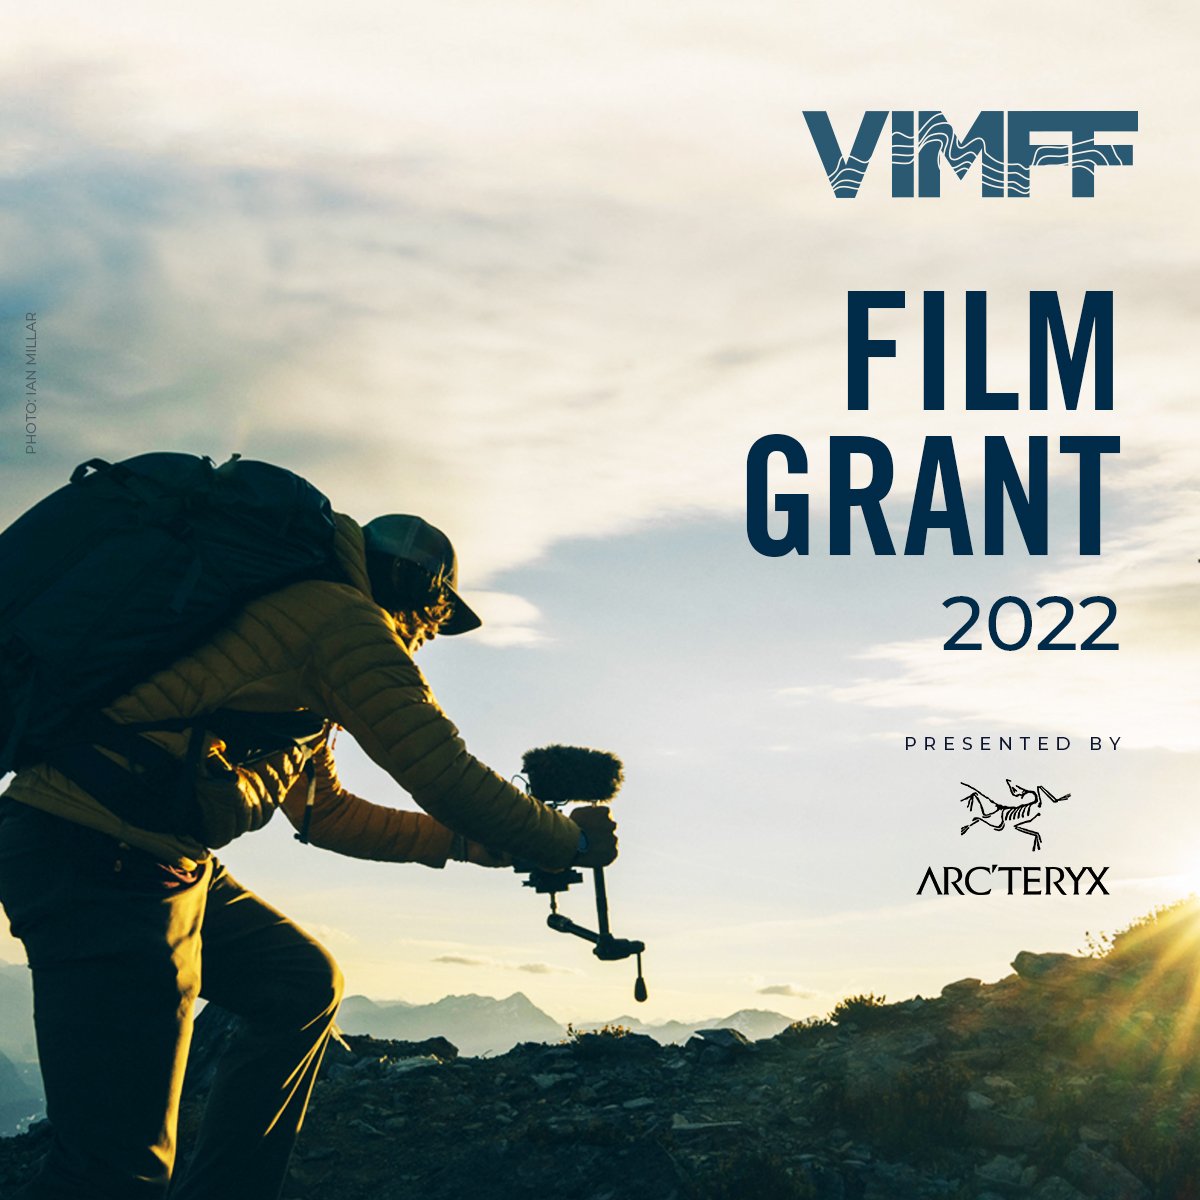 VIMFF adventure film grant x